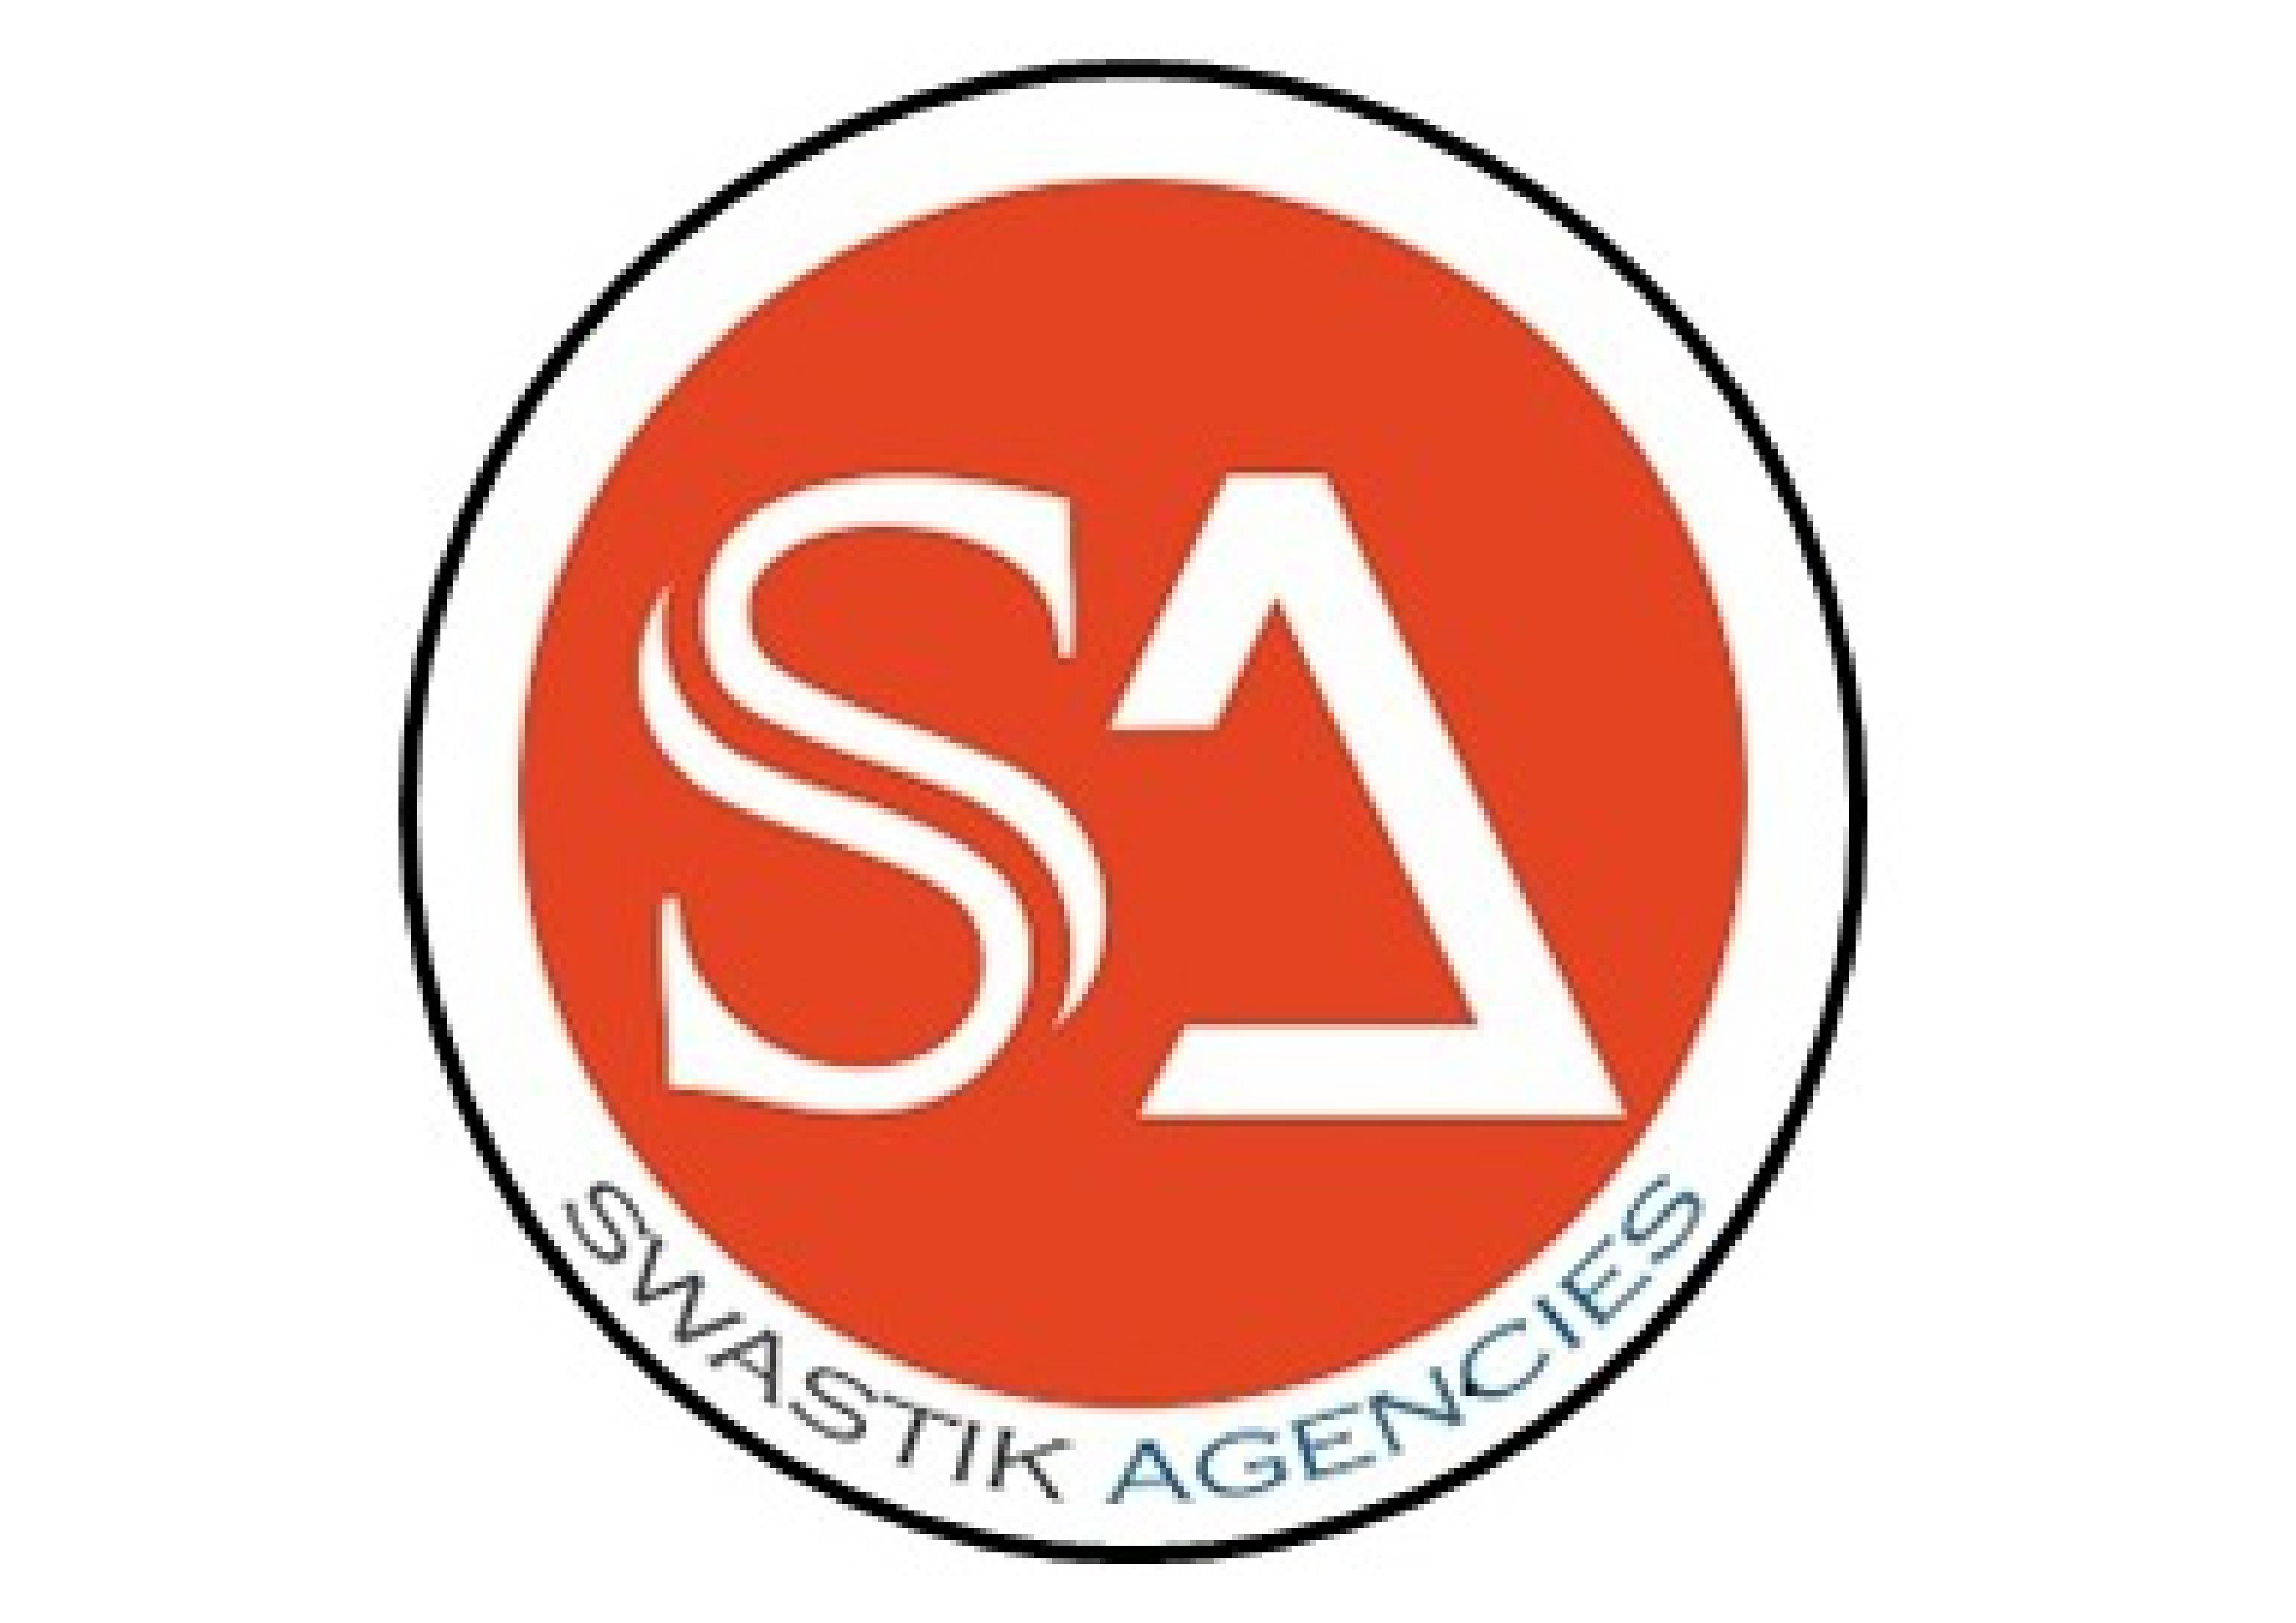 Swastik agencies